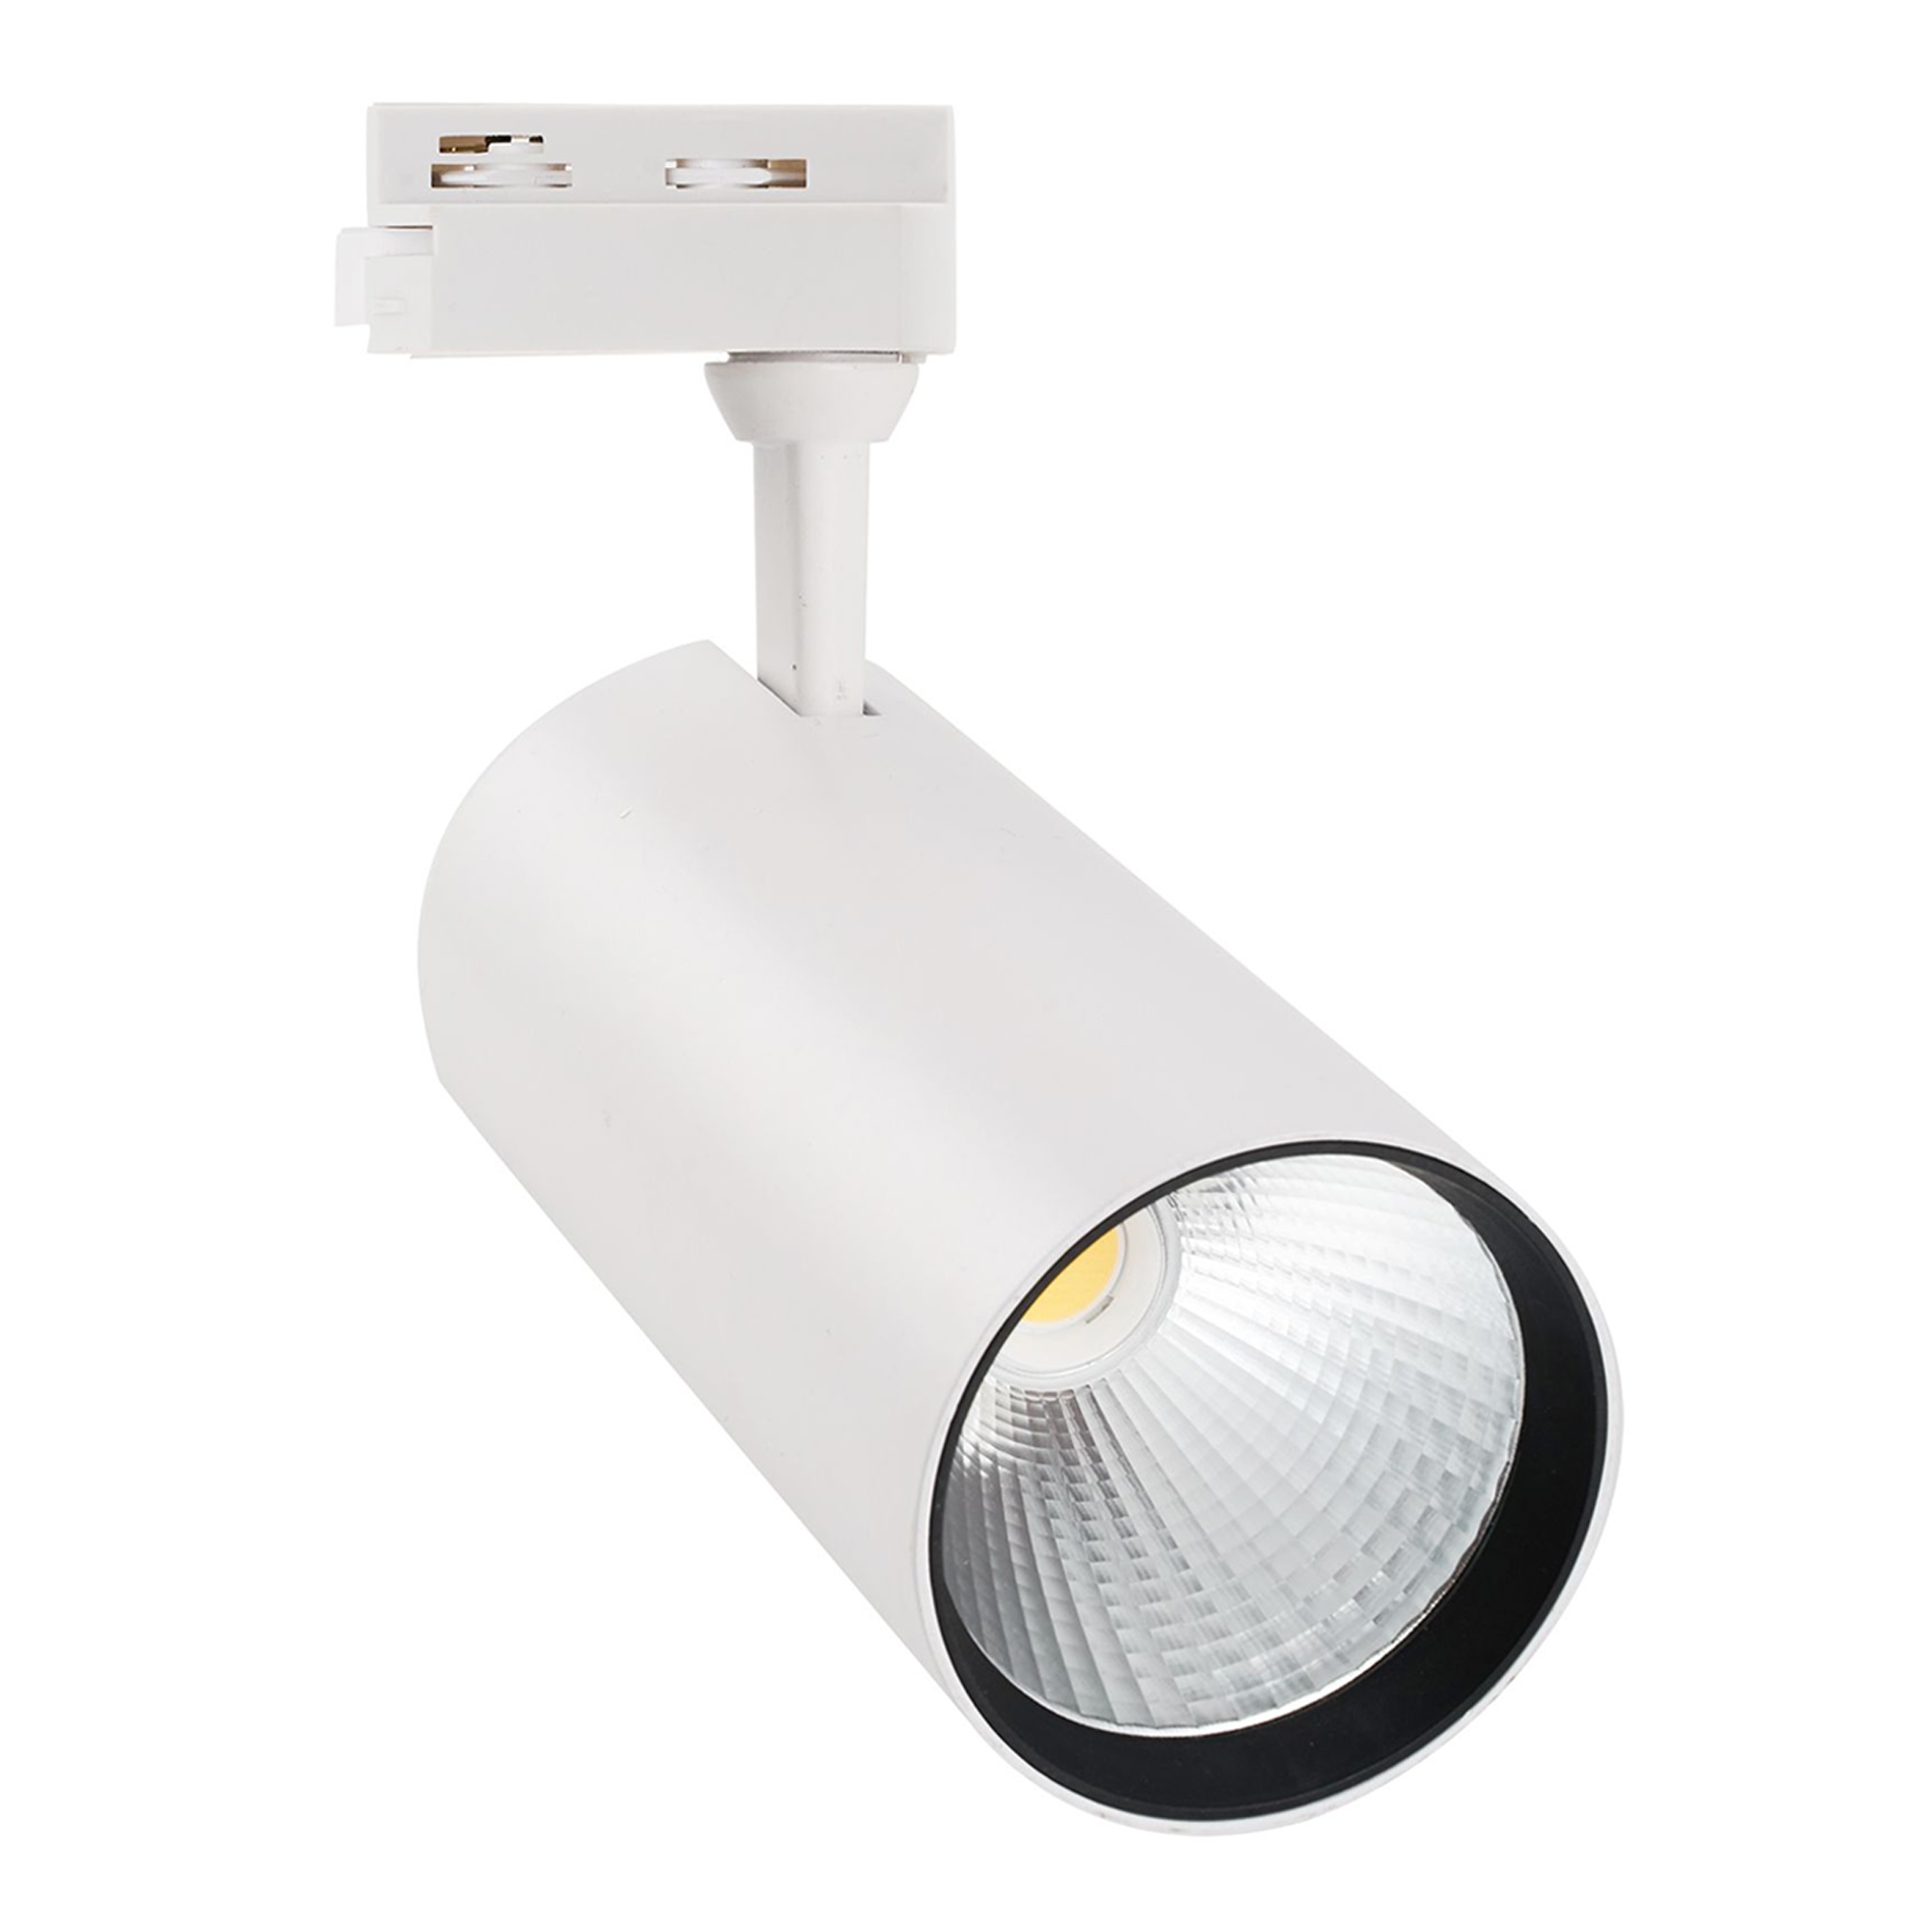 ULB-Q276 32W-4000К WHITE Светильник-прожектор светодиодный трековый. 3000 Лм. Белый свет 4000К. Корпус белый. ТМ Volpe.